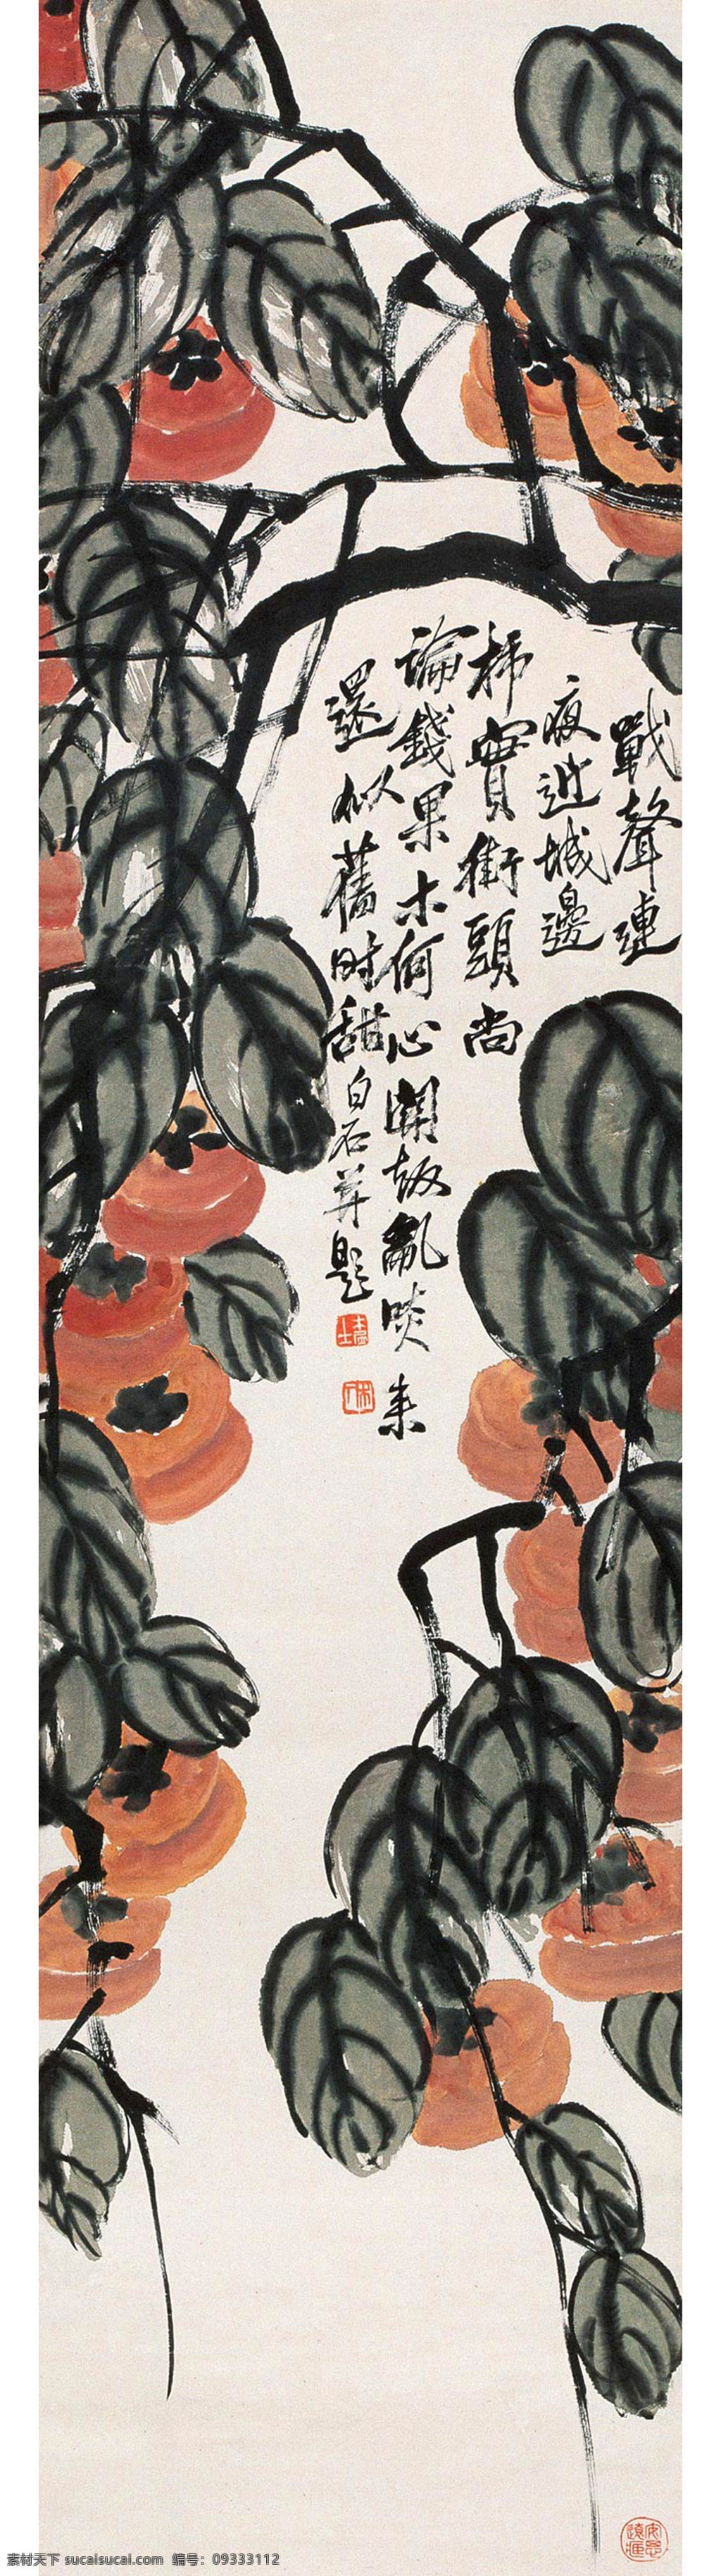 旧时甜 国画 齐白石 柿子 万事如意 事事如意 文化艺术 绘画书法 五谷 果蔬